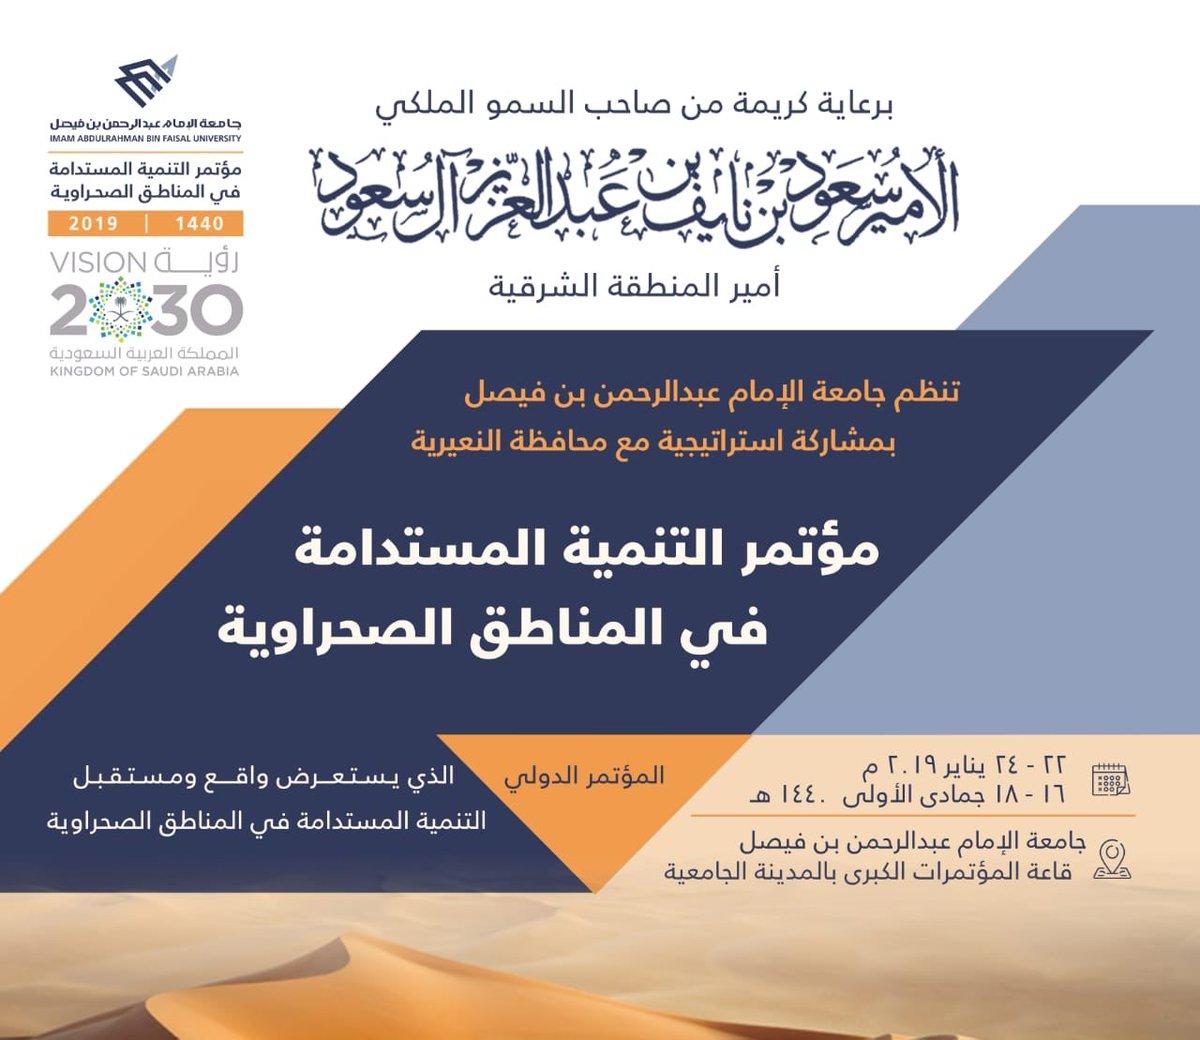 ينطلق غدا في الدمام  متحدثين دوليين و خليجيين يشاركون في مؤتمر التنمية المستدامة في المناطق الصحراوية بجامعة الامام عبدالرحمن 